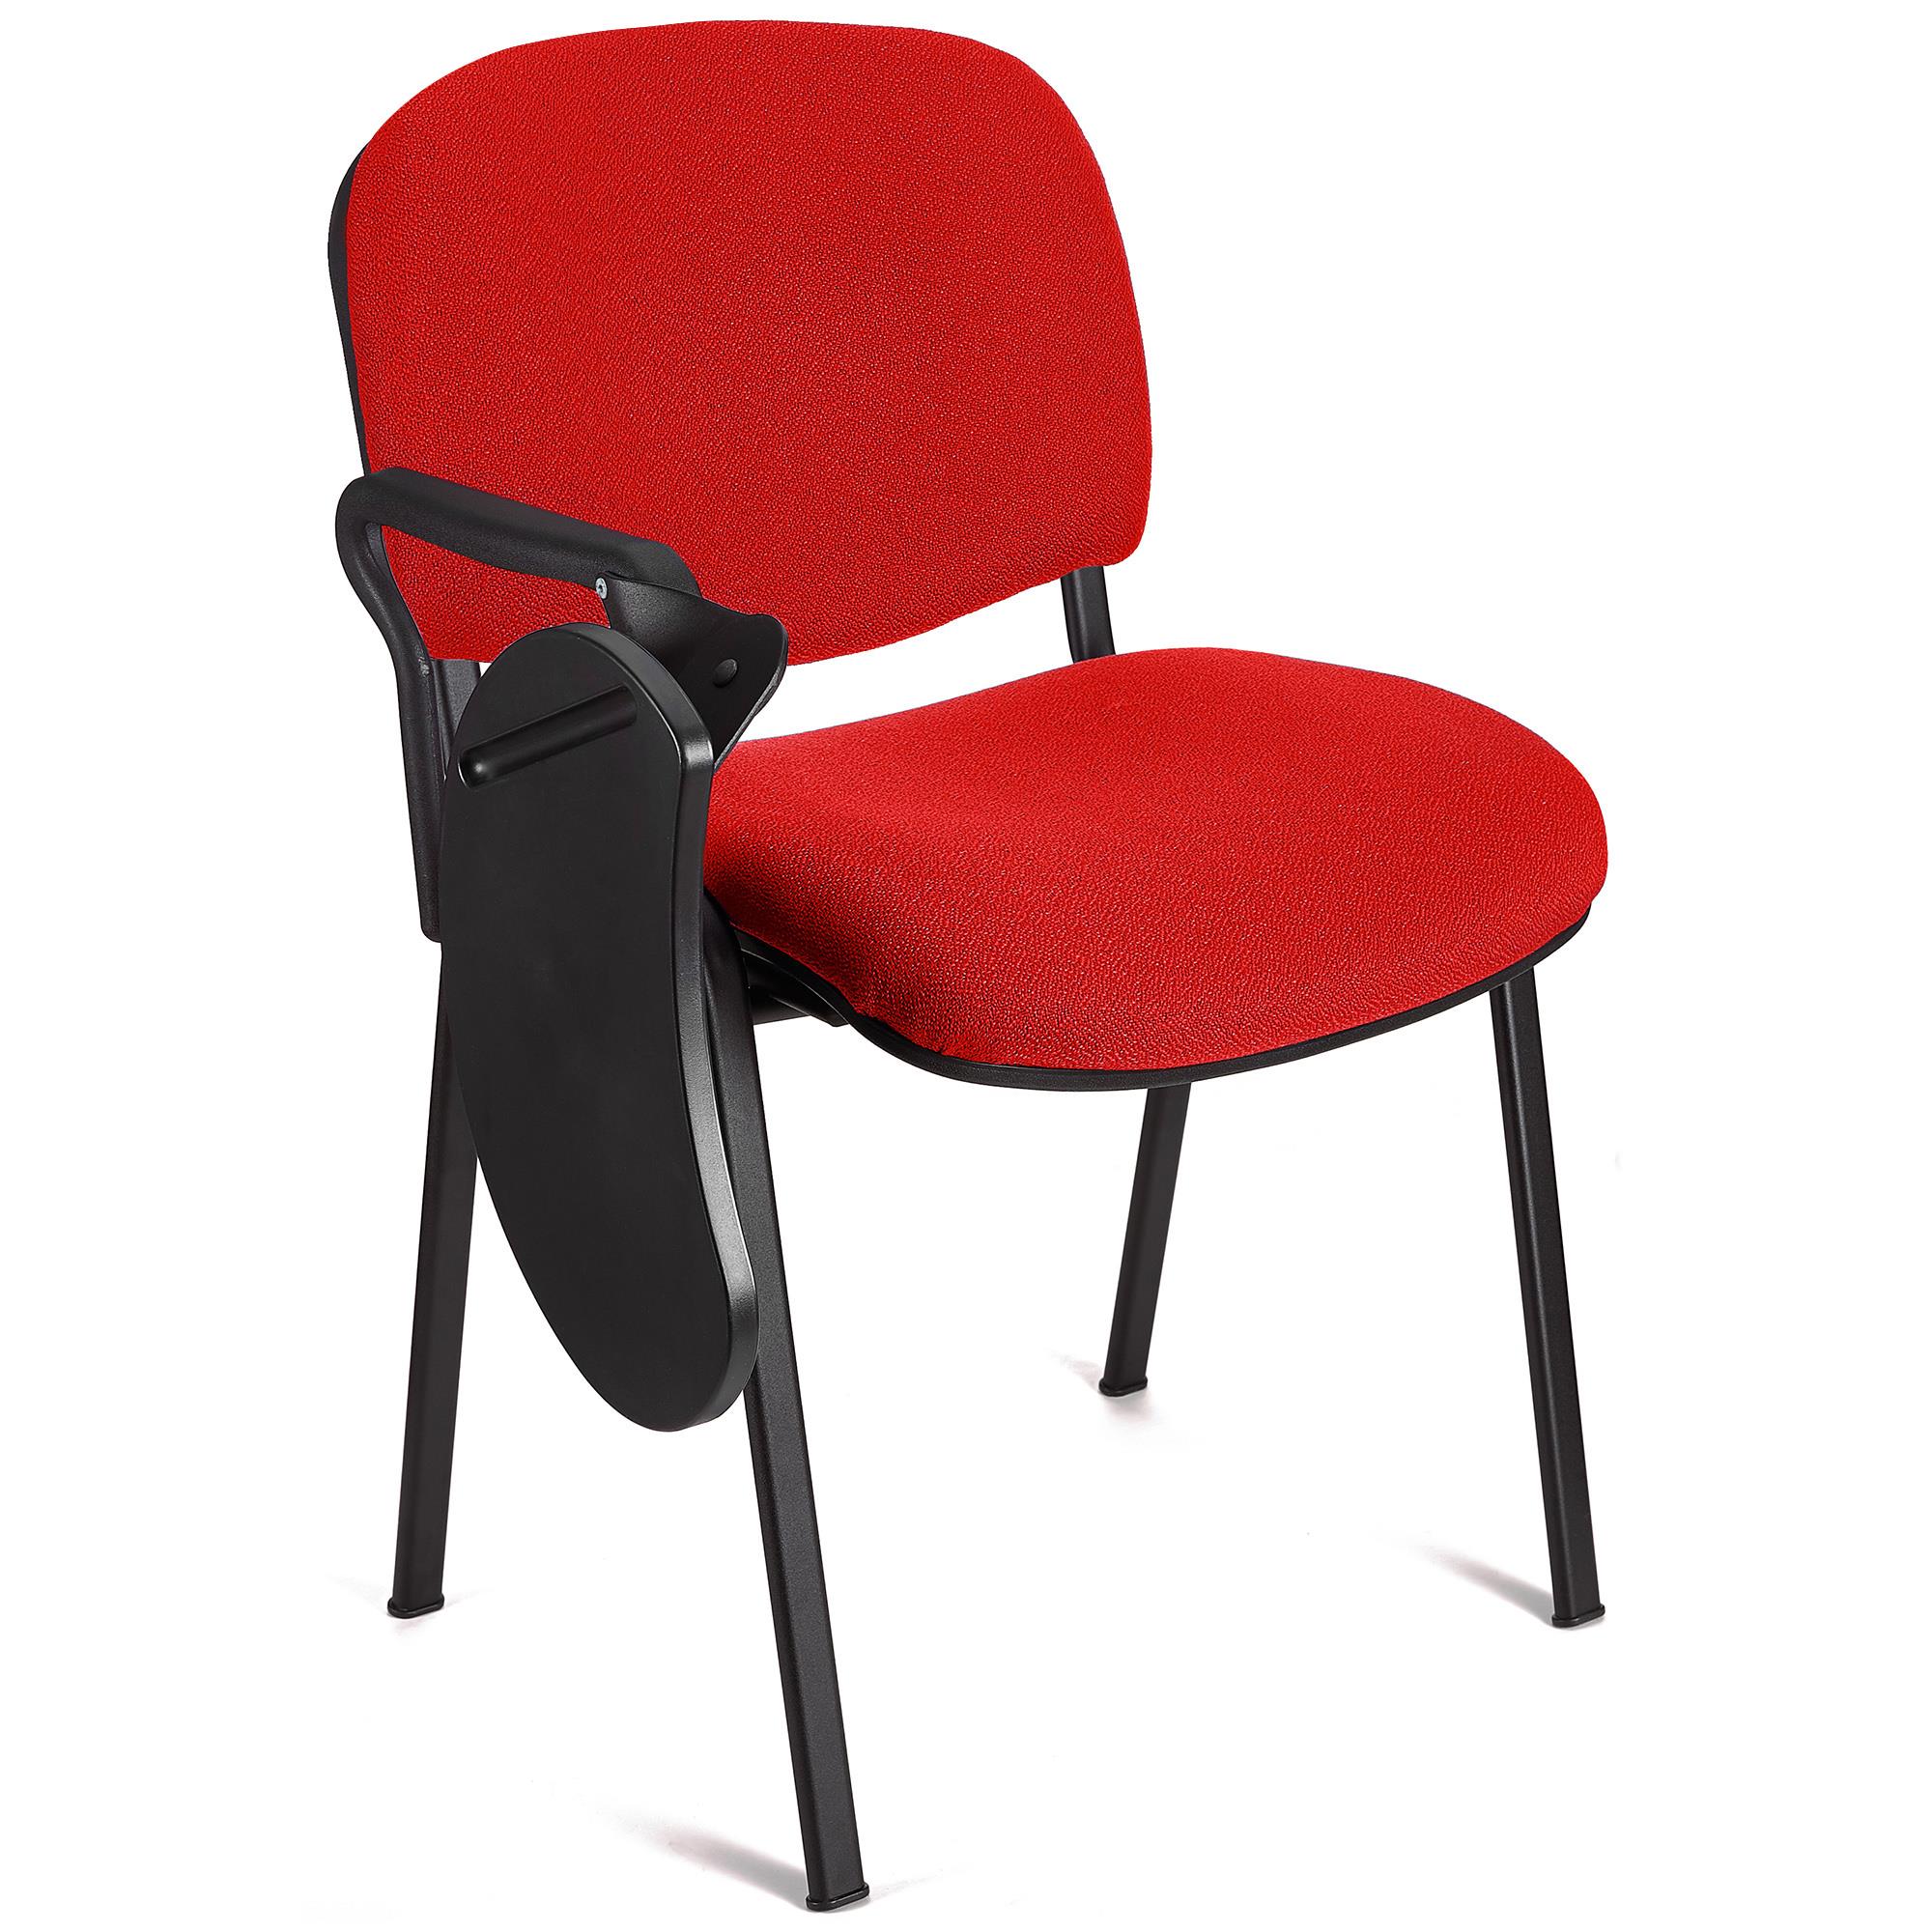 Sedia Conferenze MOBY con SCRITTOIO ribaltabile, Prezzo imbattibile, colore Rosso con gambe Nere